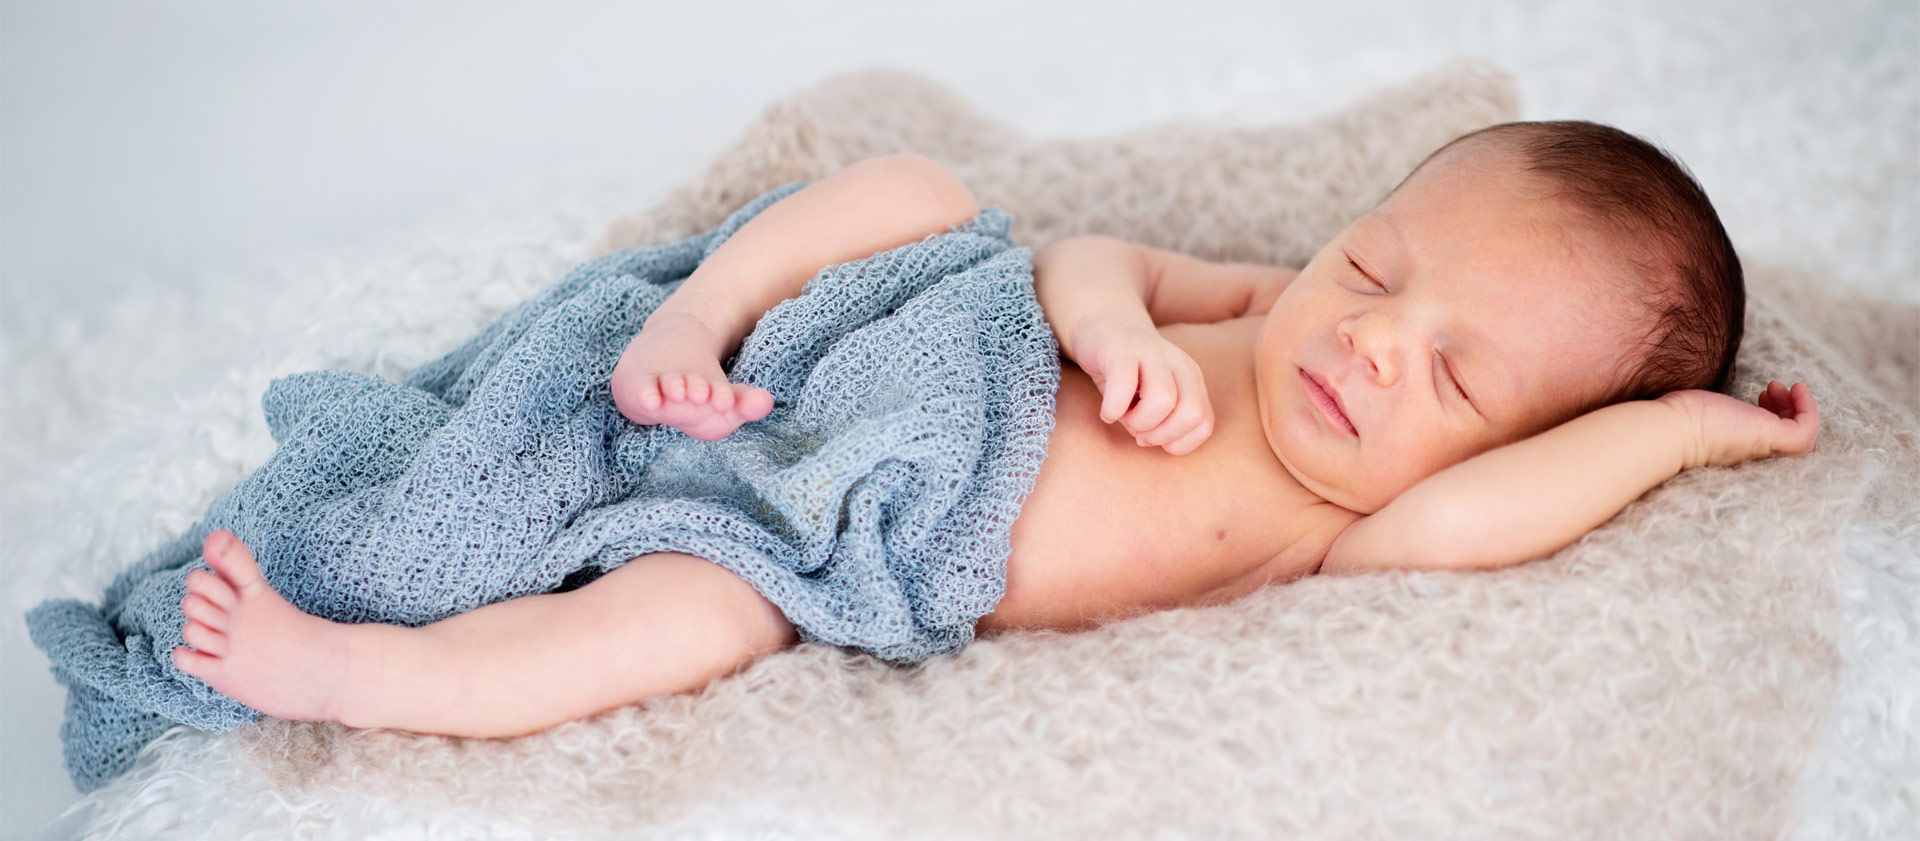 Ein Baby liegt auf einem Fell mit einem blauen Tuch und schläft